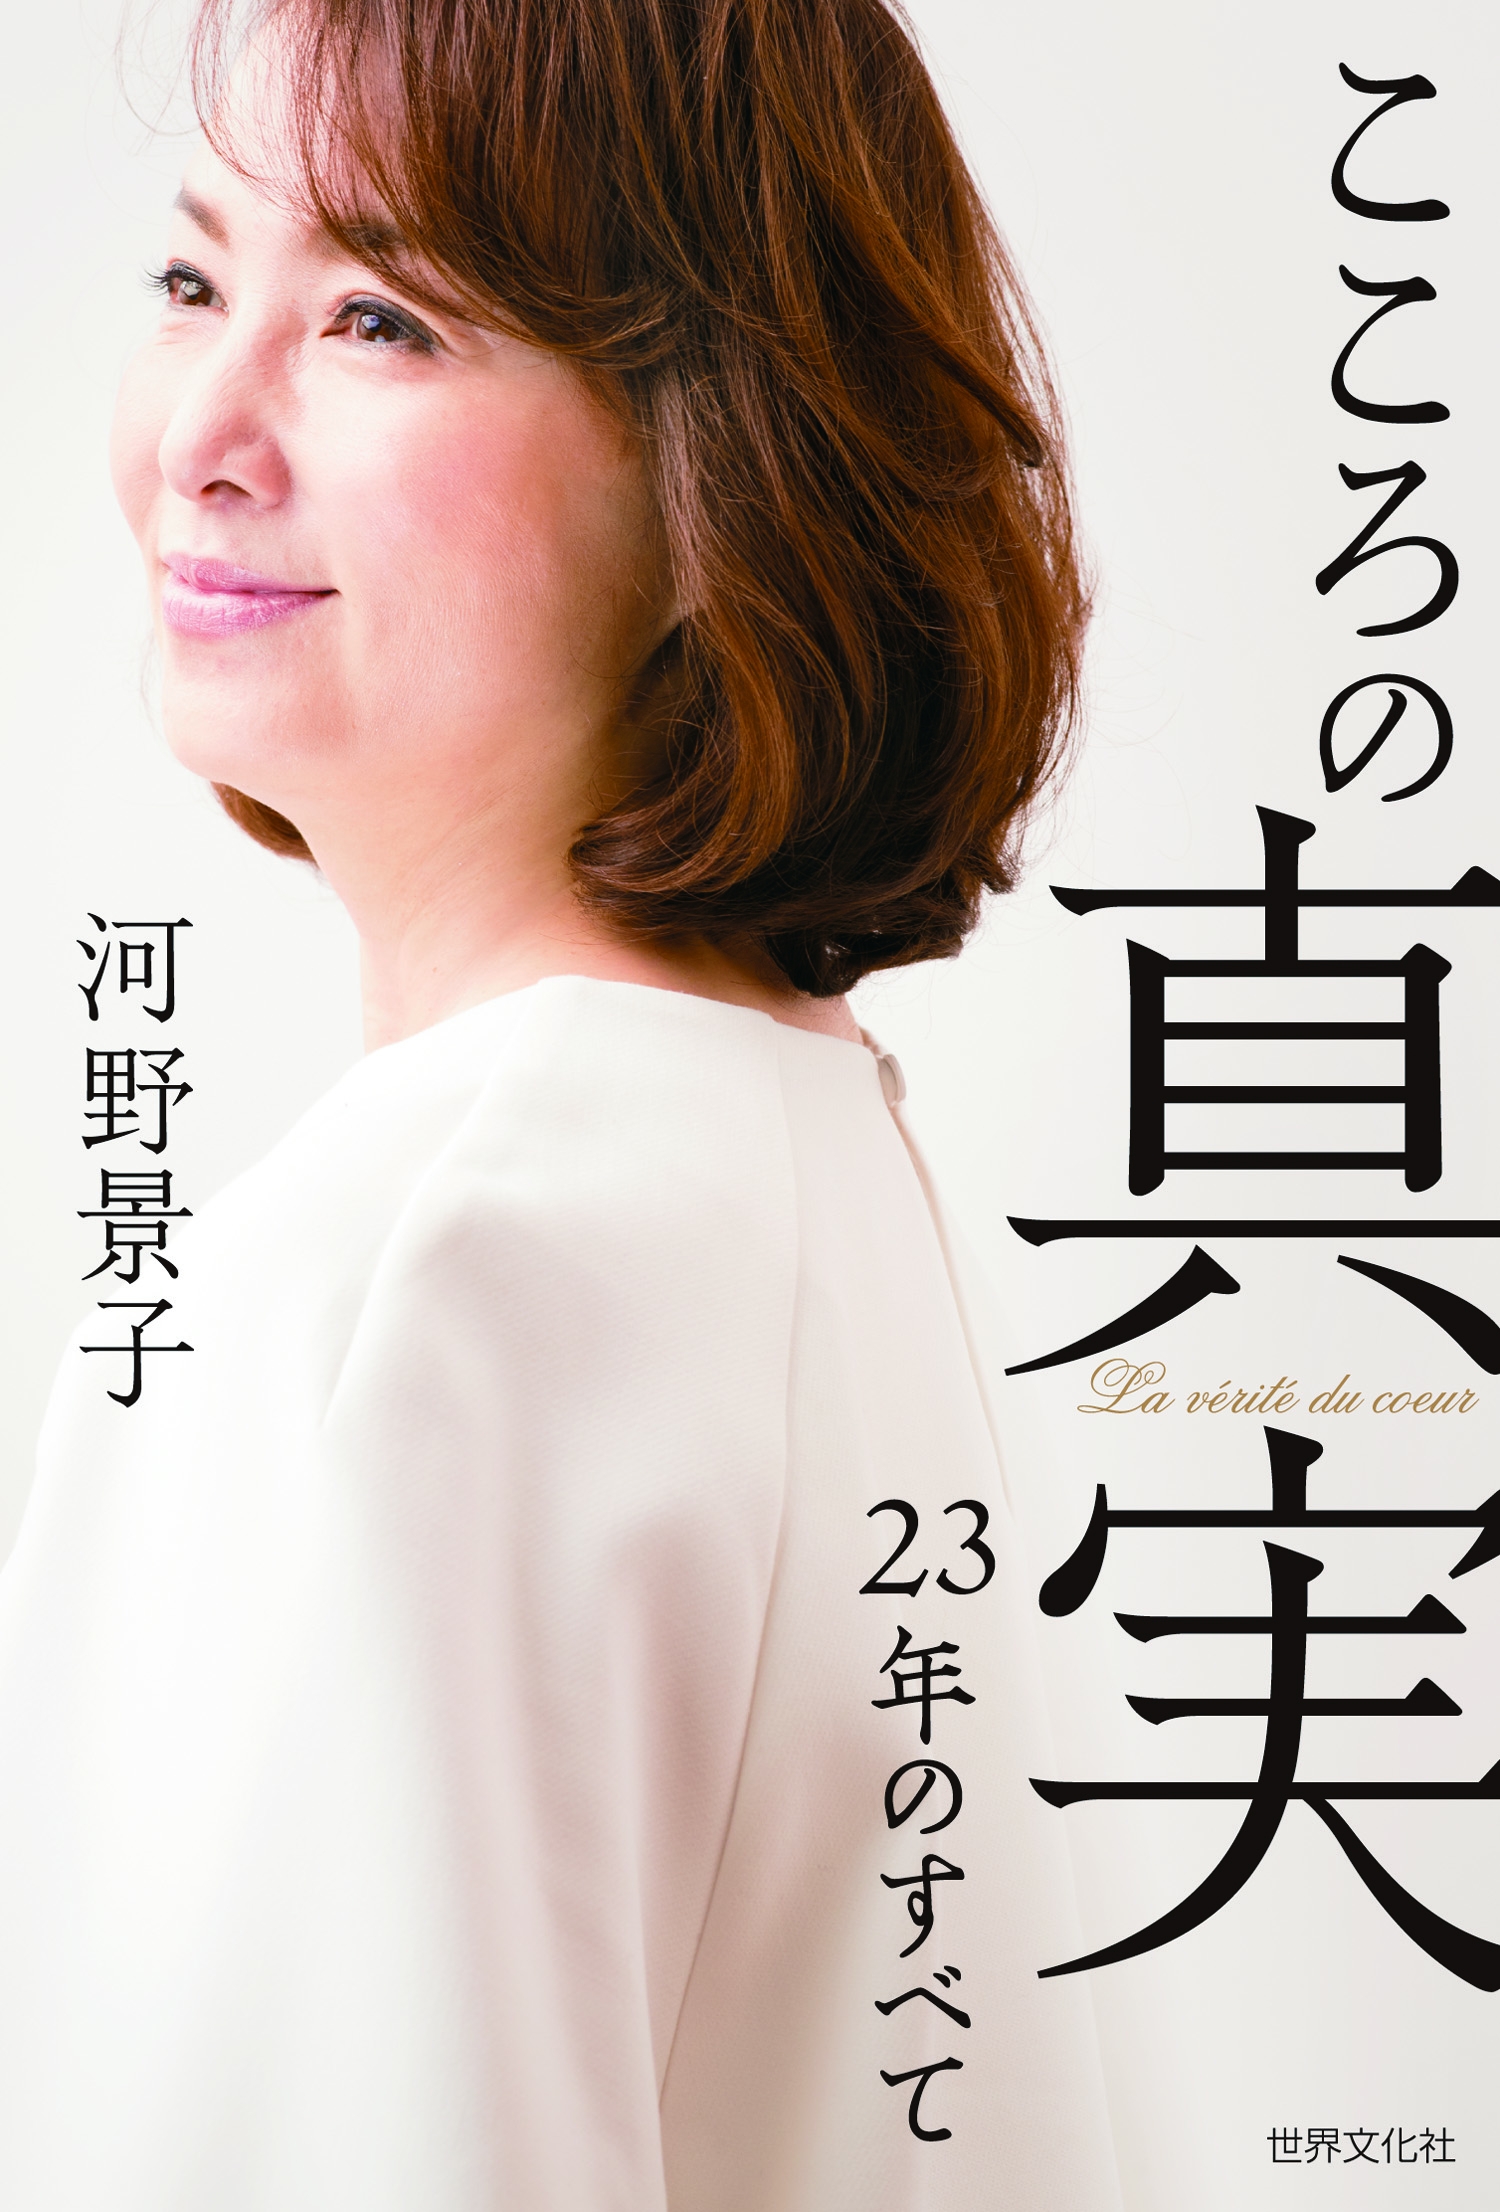 河野景子さん離婚後初のエッセイ本 こころの真実 刊行 株式会社世界文化ホールディングスのプレスリリース